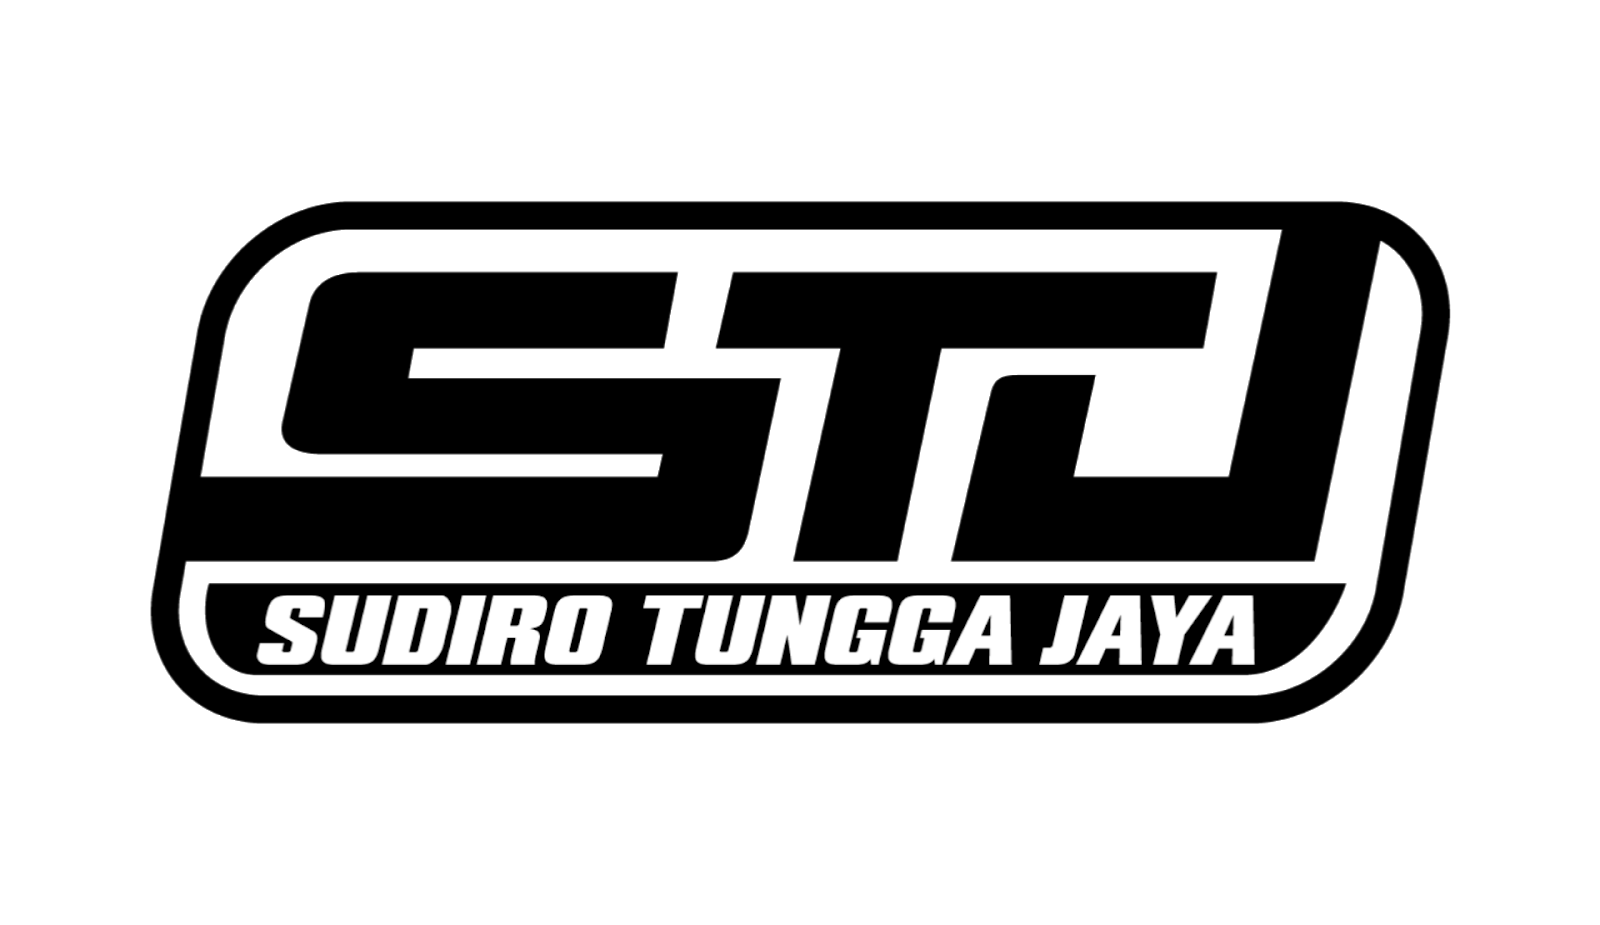 Logo STJ (Sudiro Tungga Jaya) Format PNG